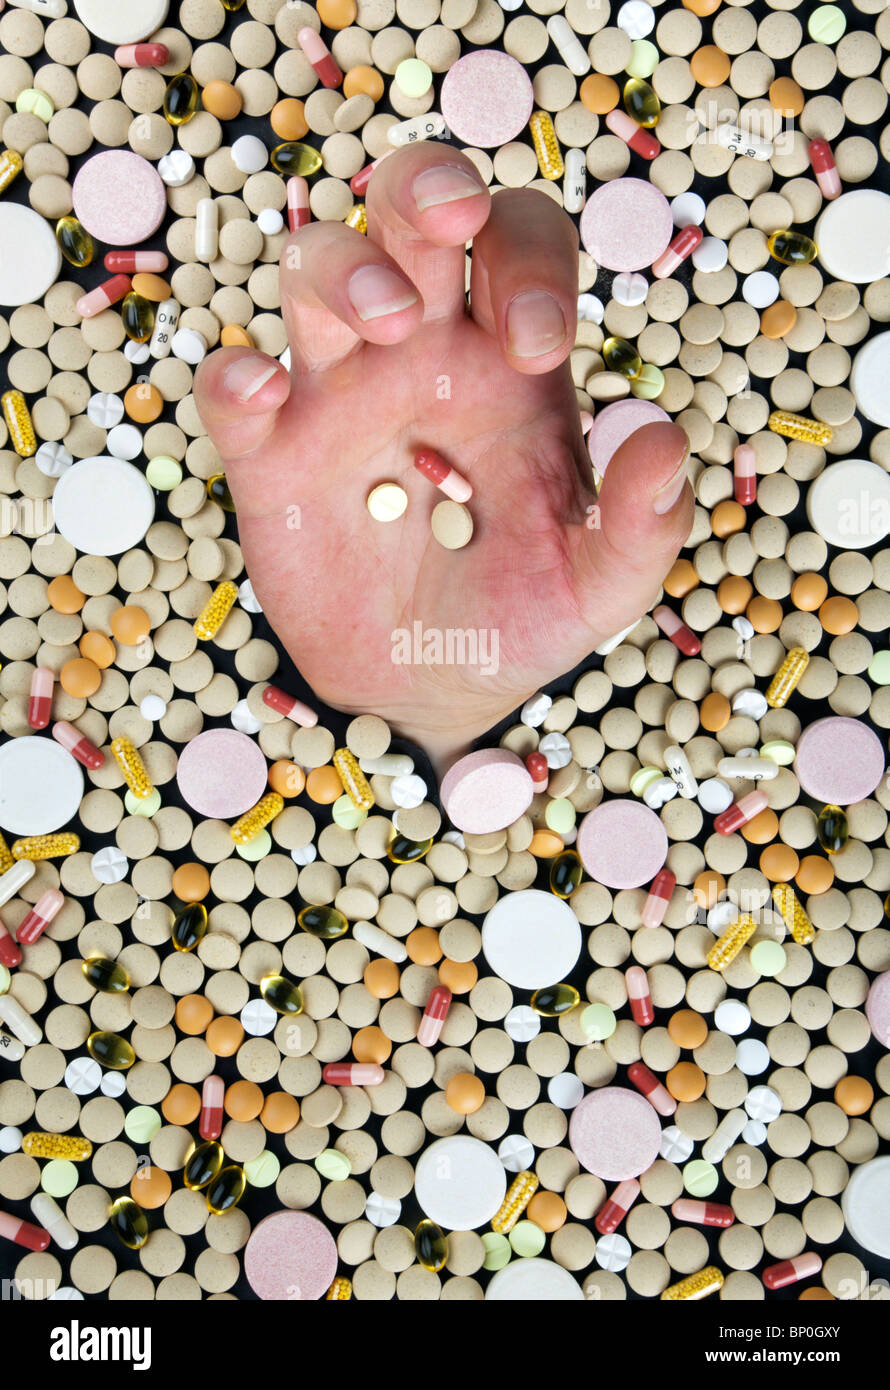 Ertrinken in einem Meer von Medizin - Hand erreichen zwischen Hunderten von Pillen Stockfoto